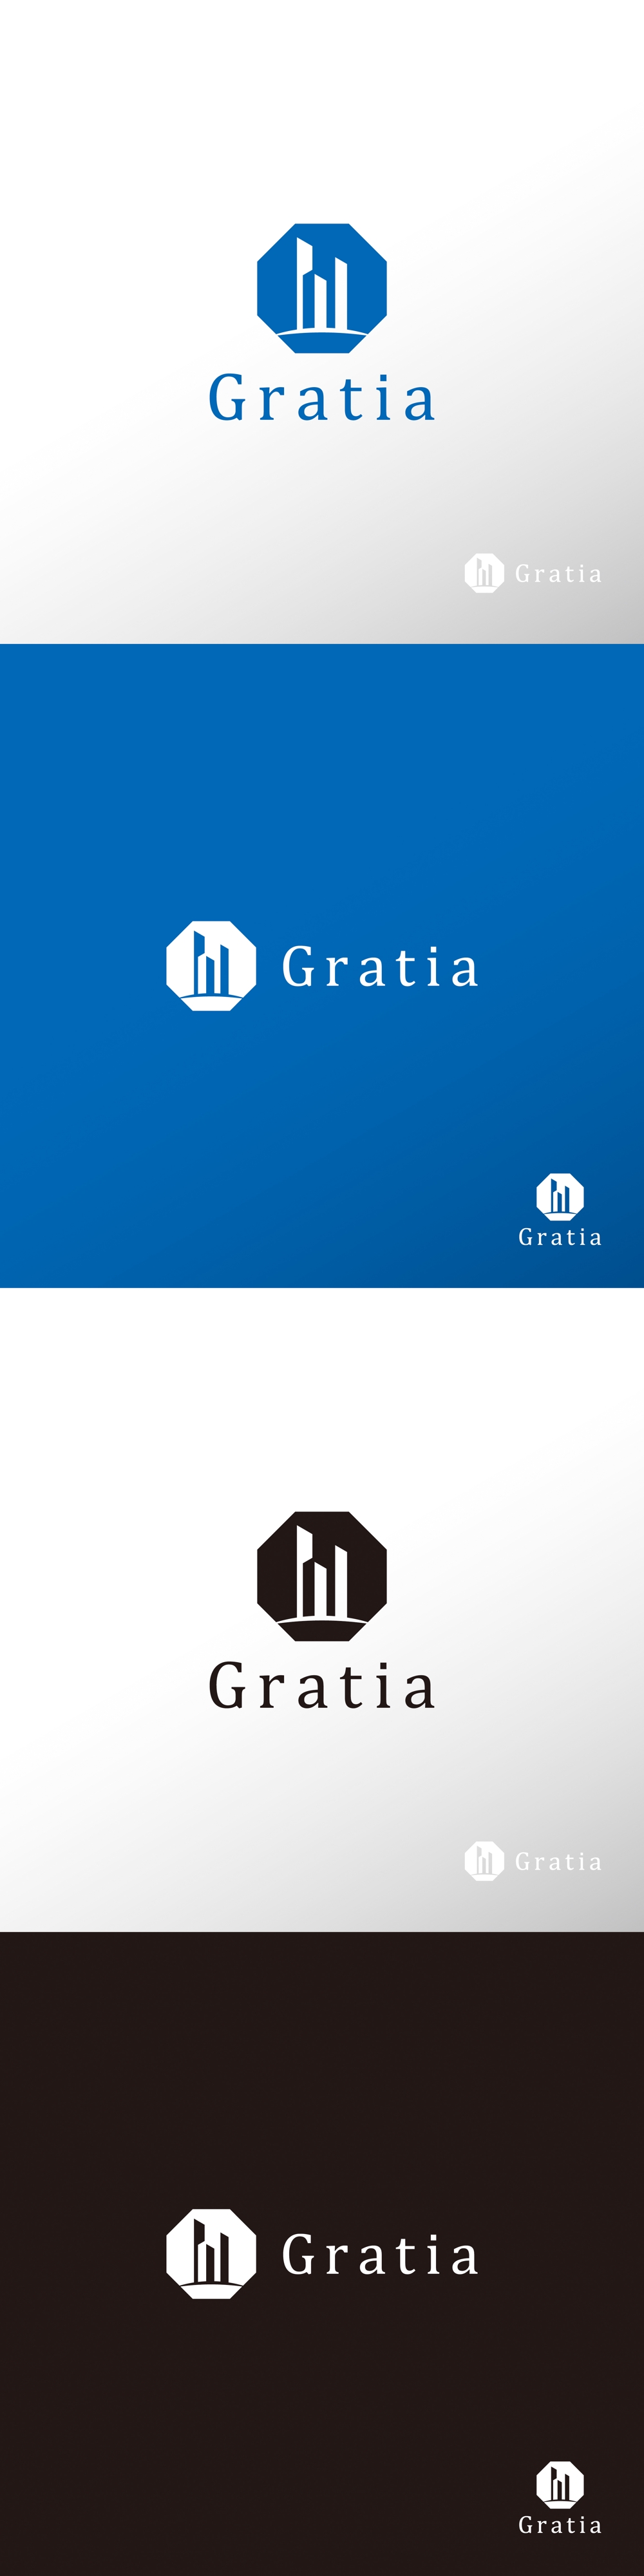 建設_Gratia_ロゴA1.jpg